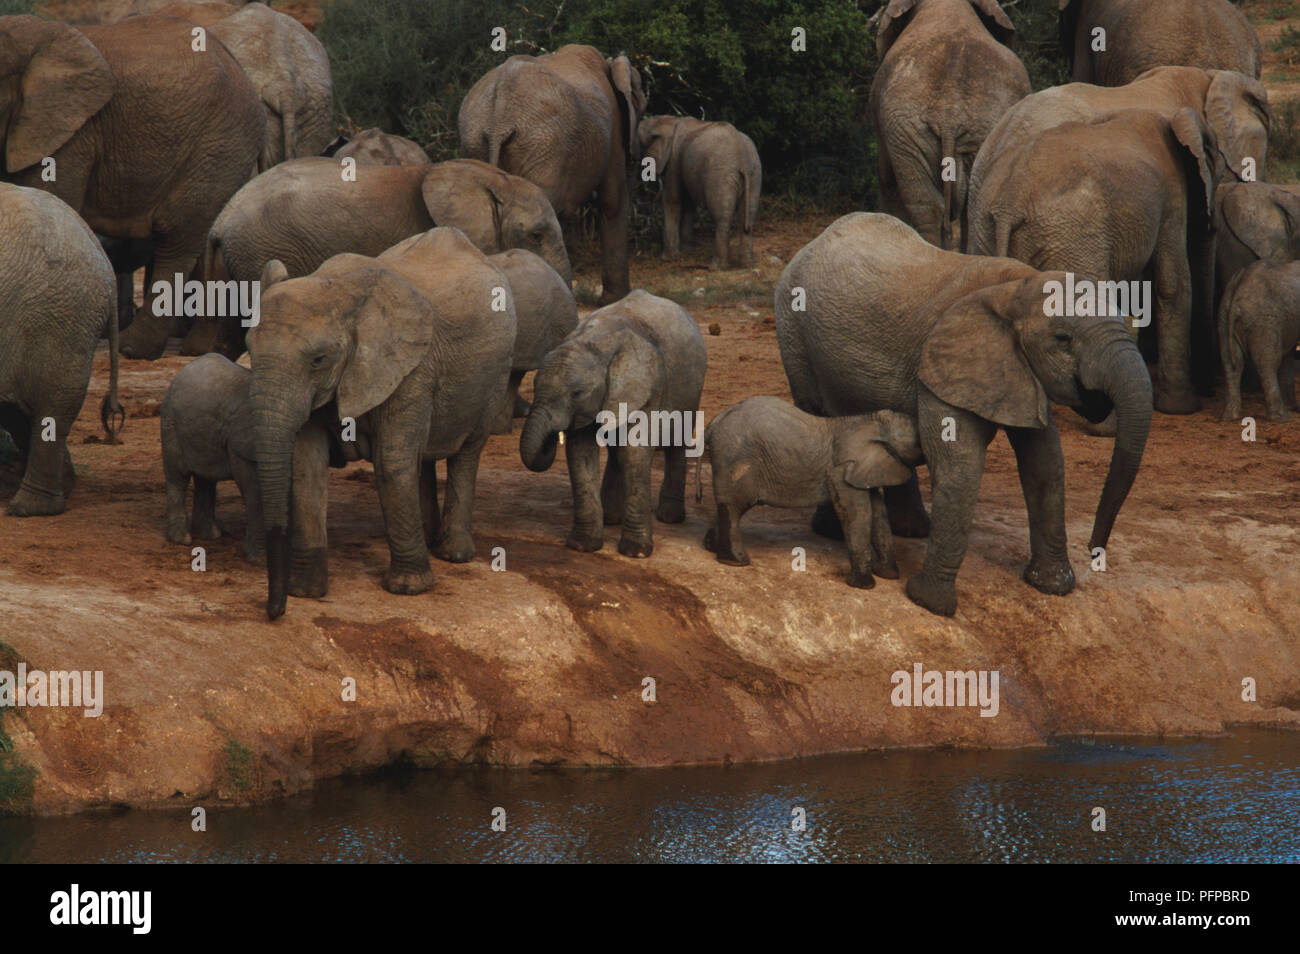 Los elefantes en un abrevadero en el Parque Nacional de Elefantes Addo. Foto de stock